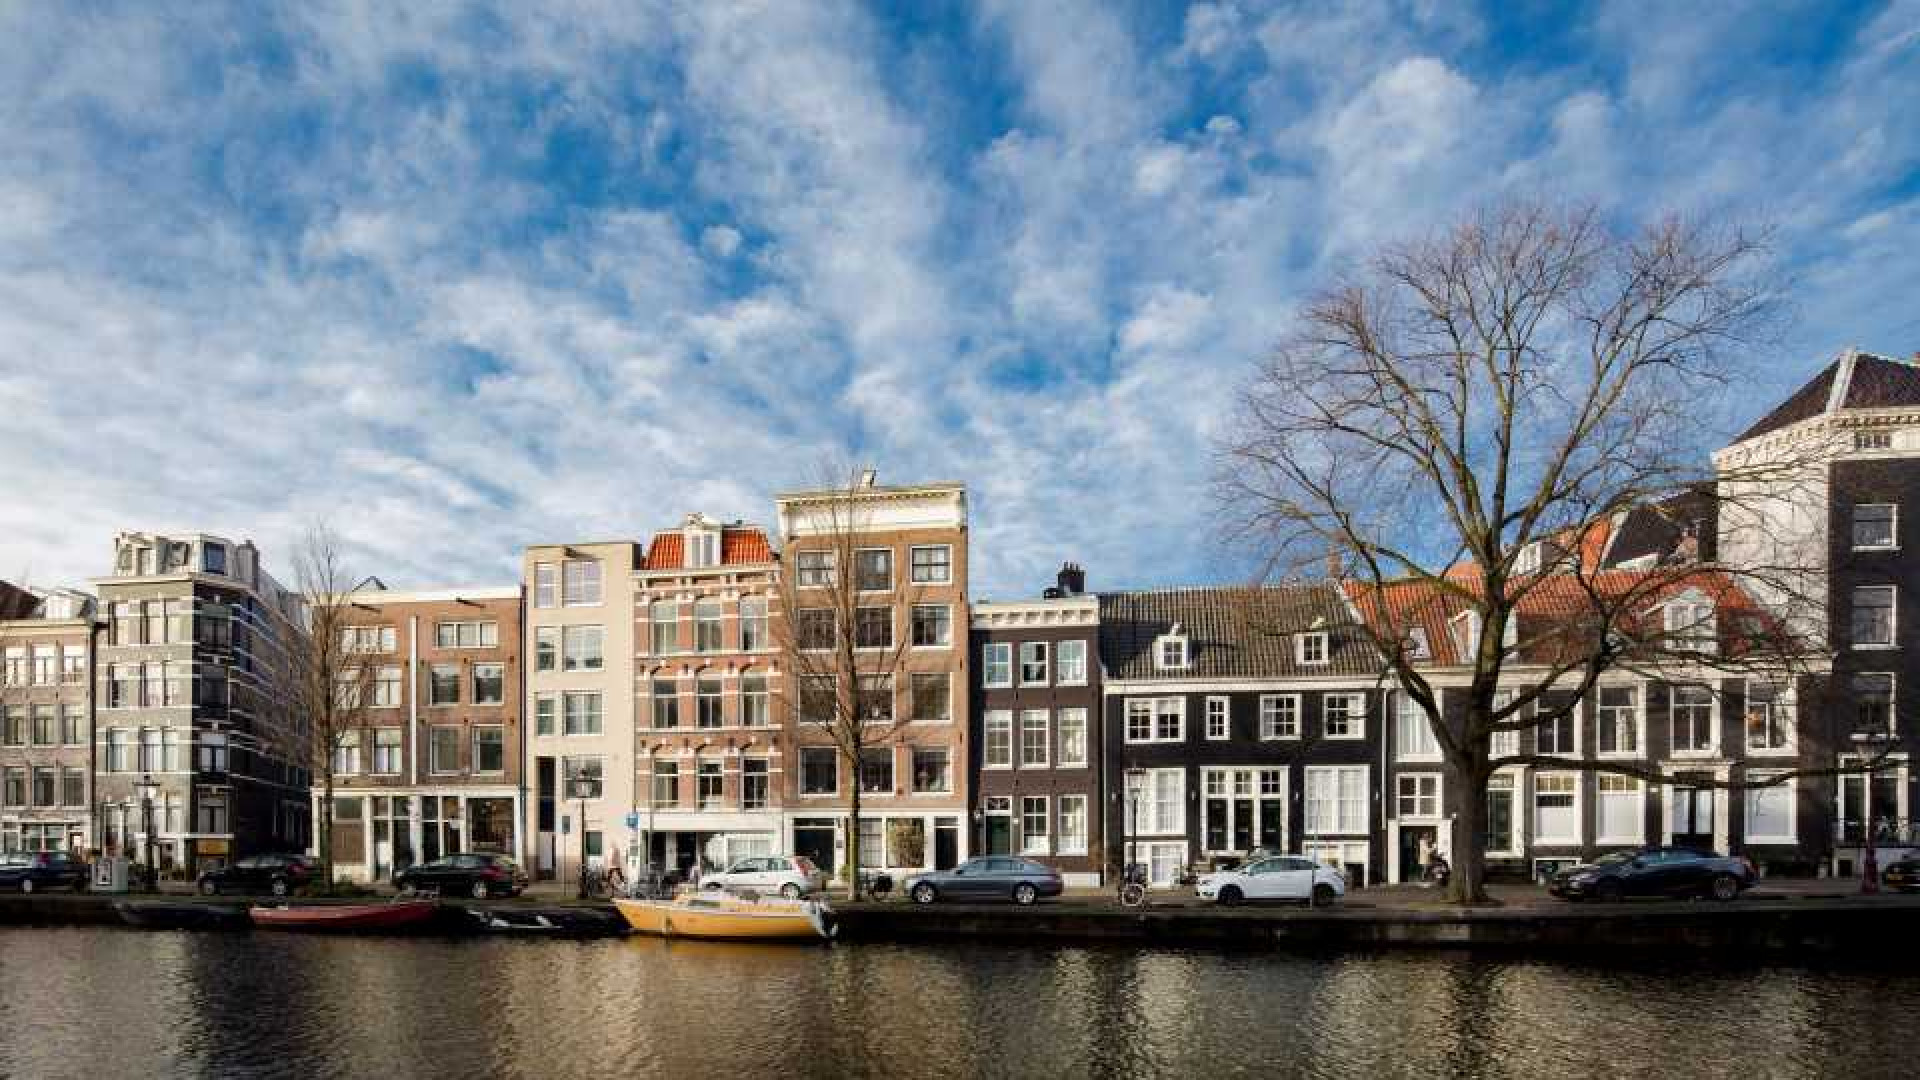 Youp van 't Hek legt miljoenen neer voor dit schitterend grachtenpand in Amsterdam.